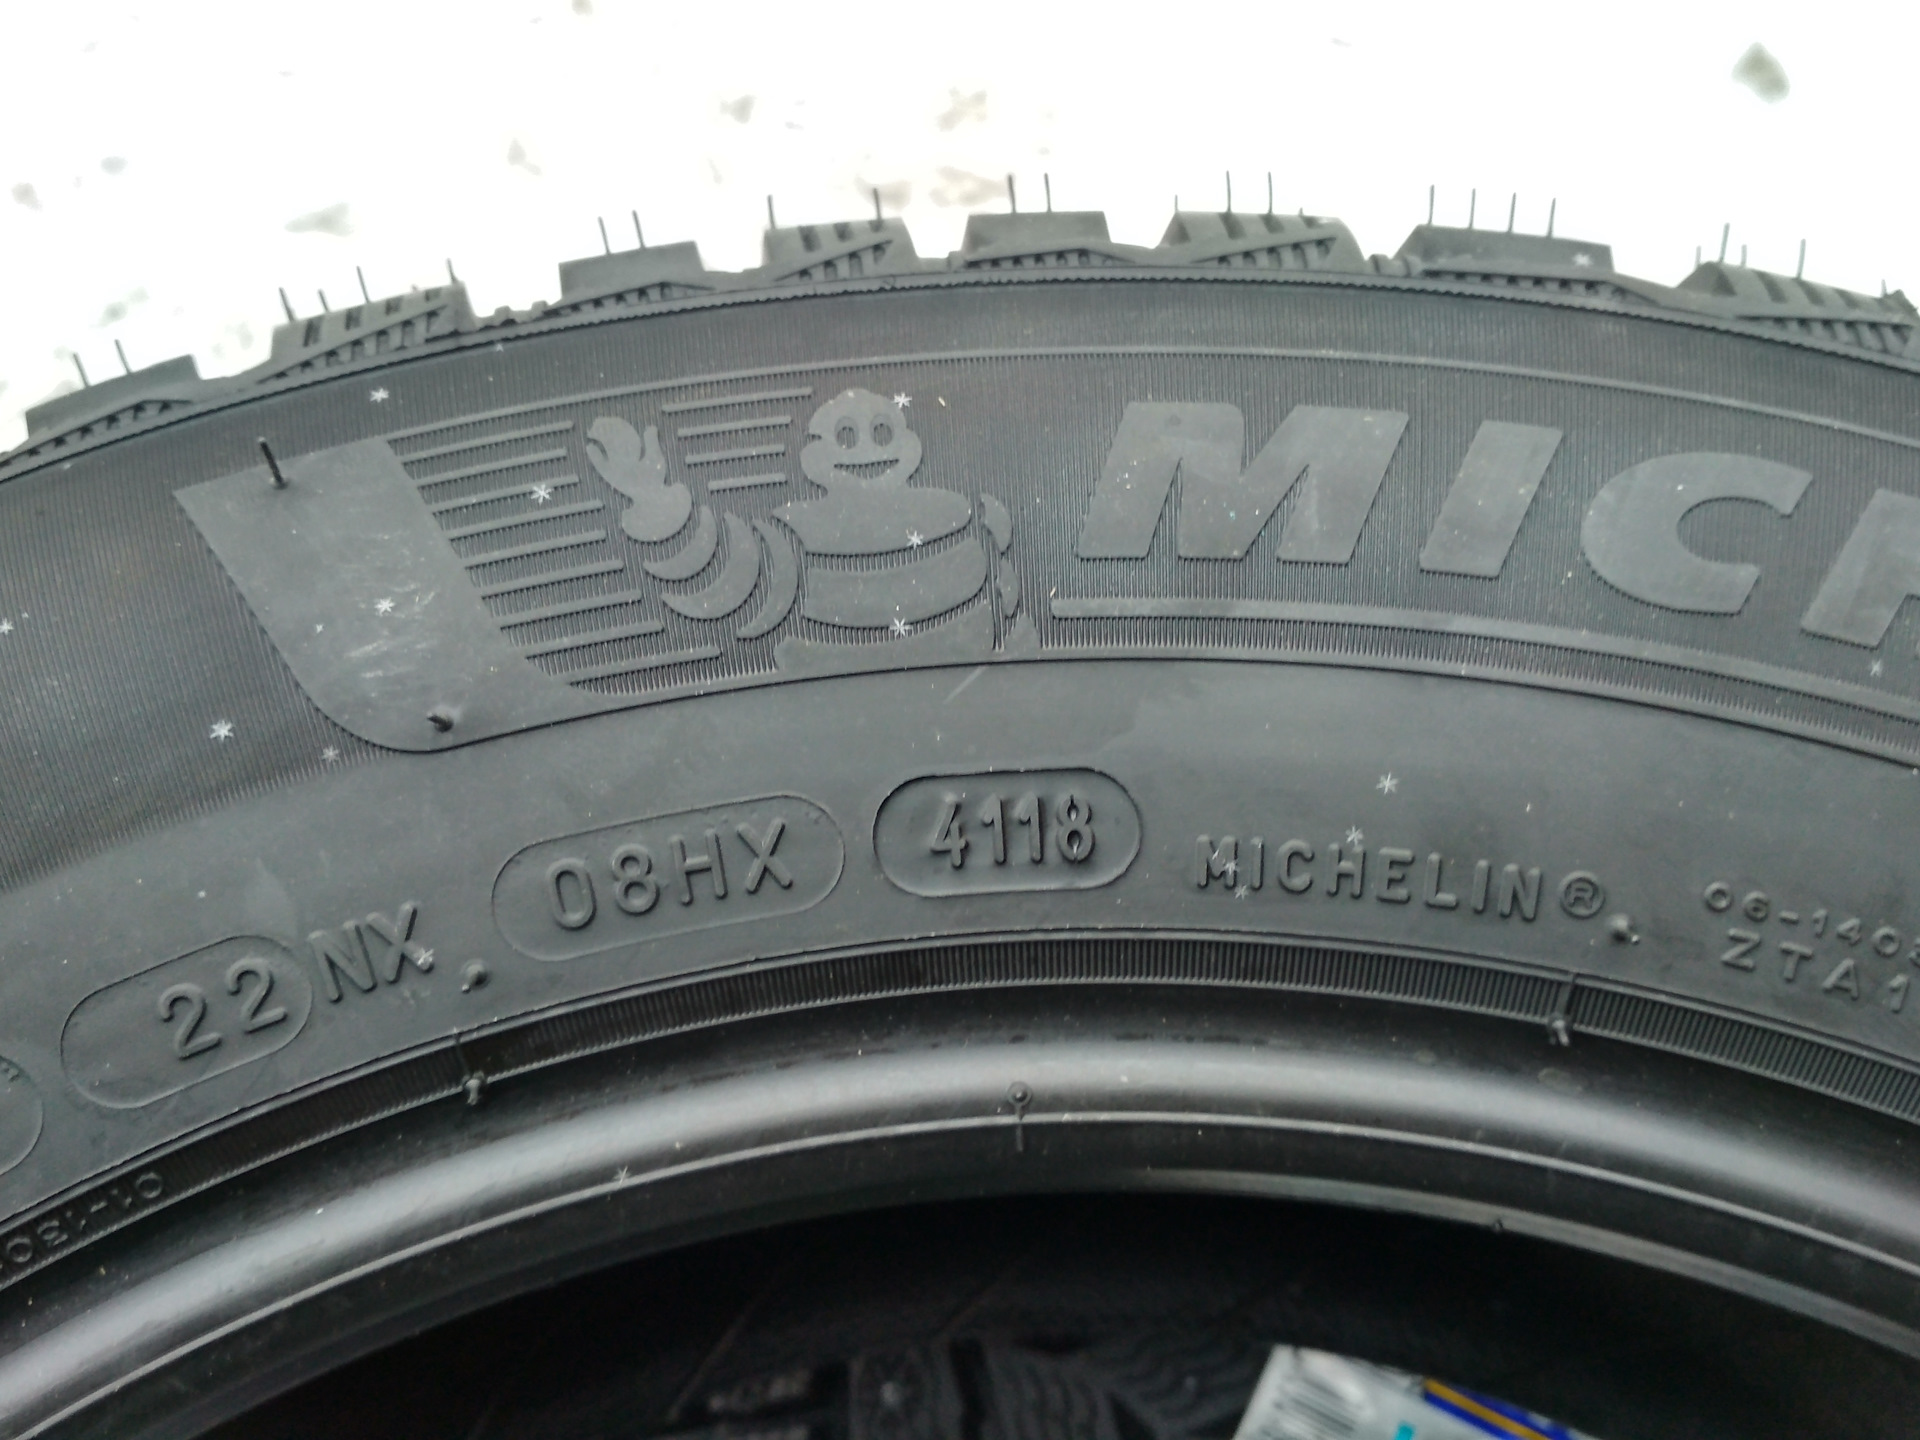 Как определить год резины. Шины Мишлен Дата изготовления шин. Дата производства шины Michelin. Дата выпуска на шинах Мишлен. Шины Дата производства michelin08xx.